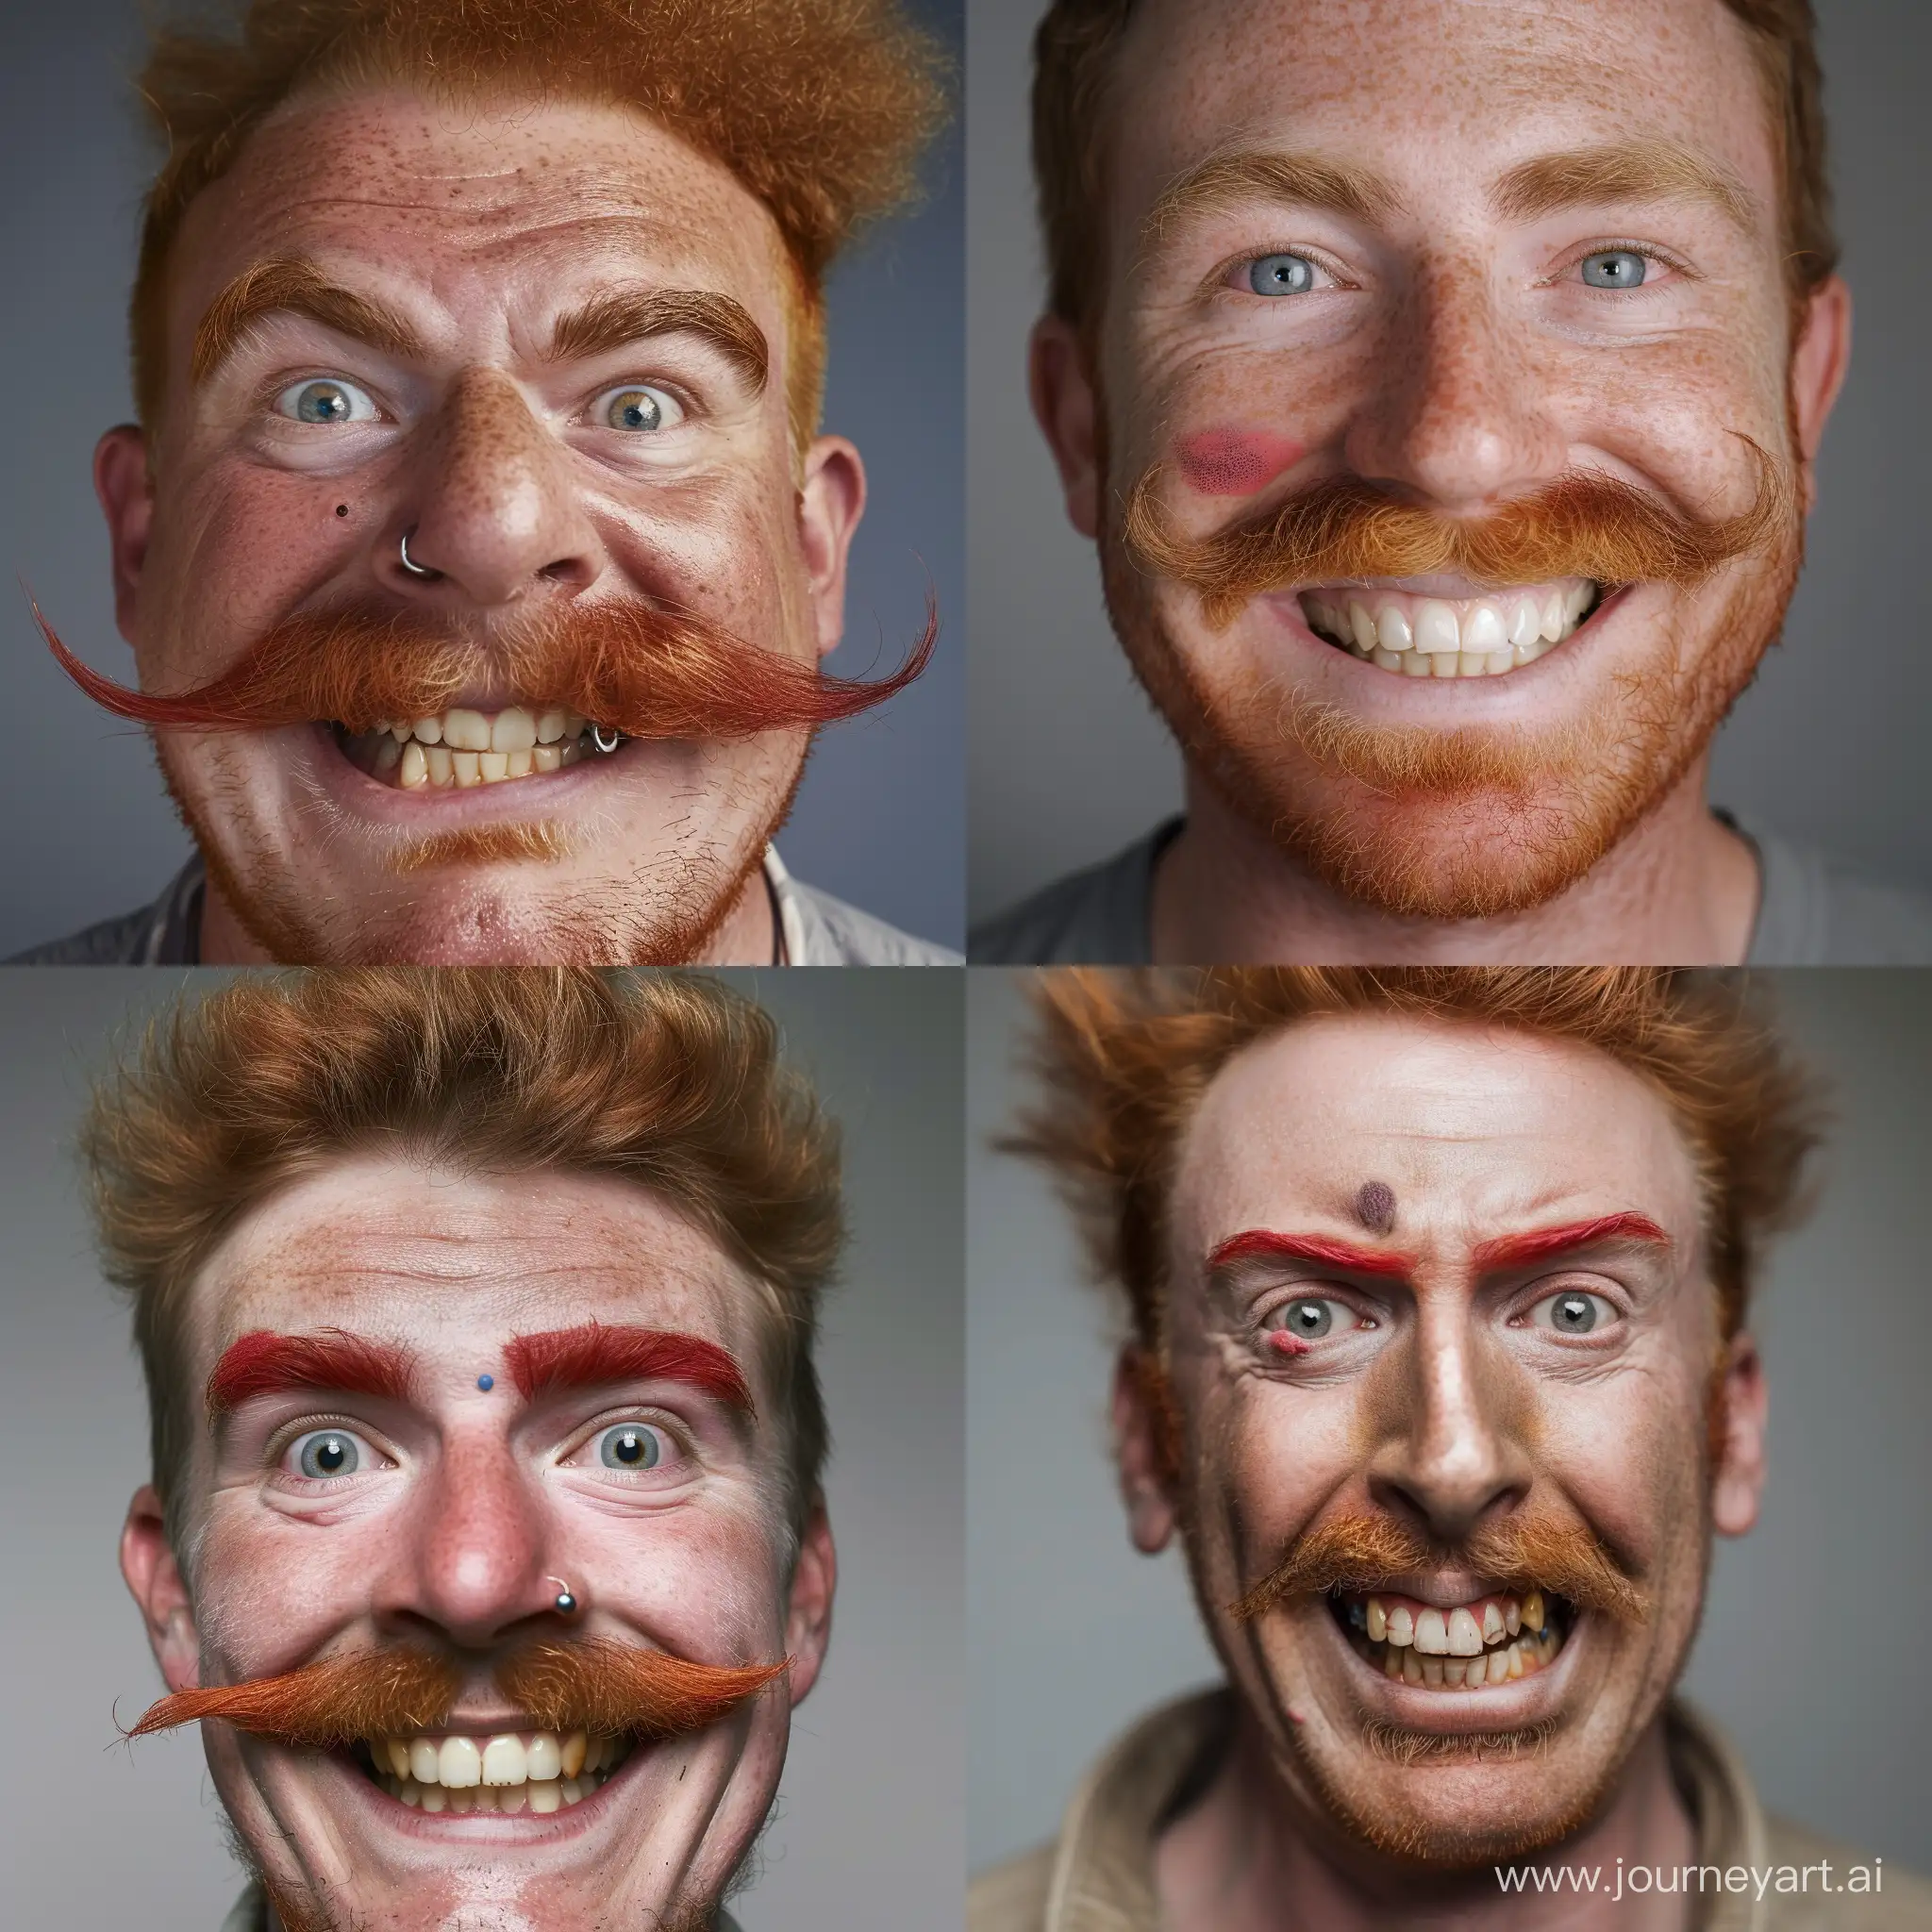 Мужчина 45-49 лет с рыжей монобровью, родинка справа от левого глаза под бровью большой нос щетина и рыжие усы, идеально белые зубы